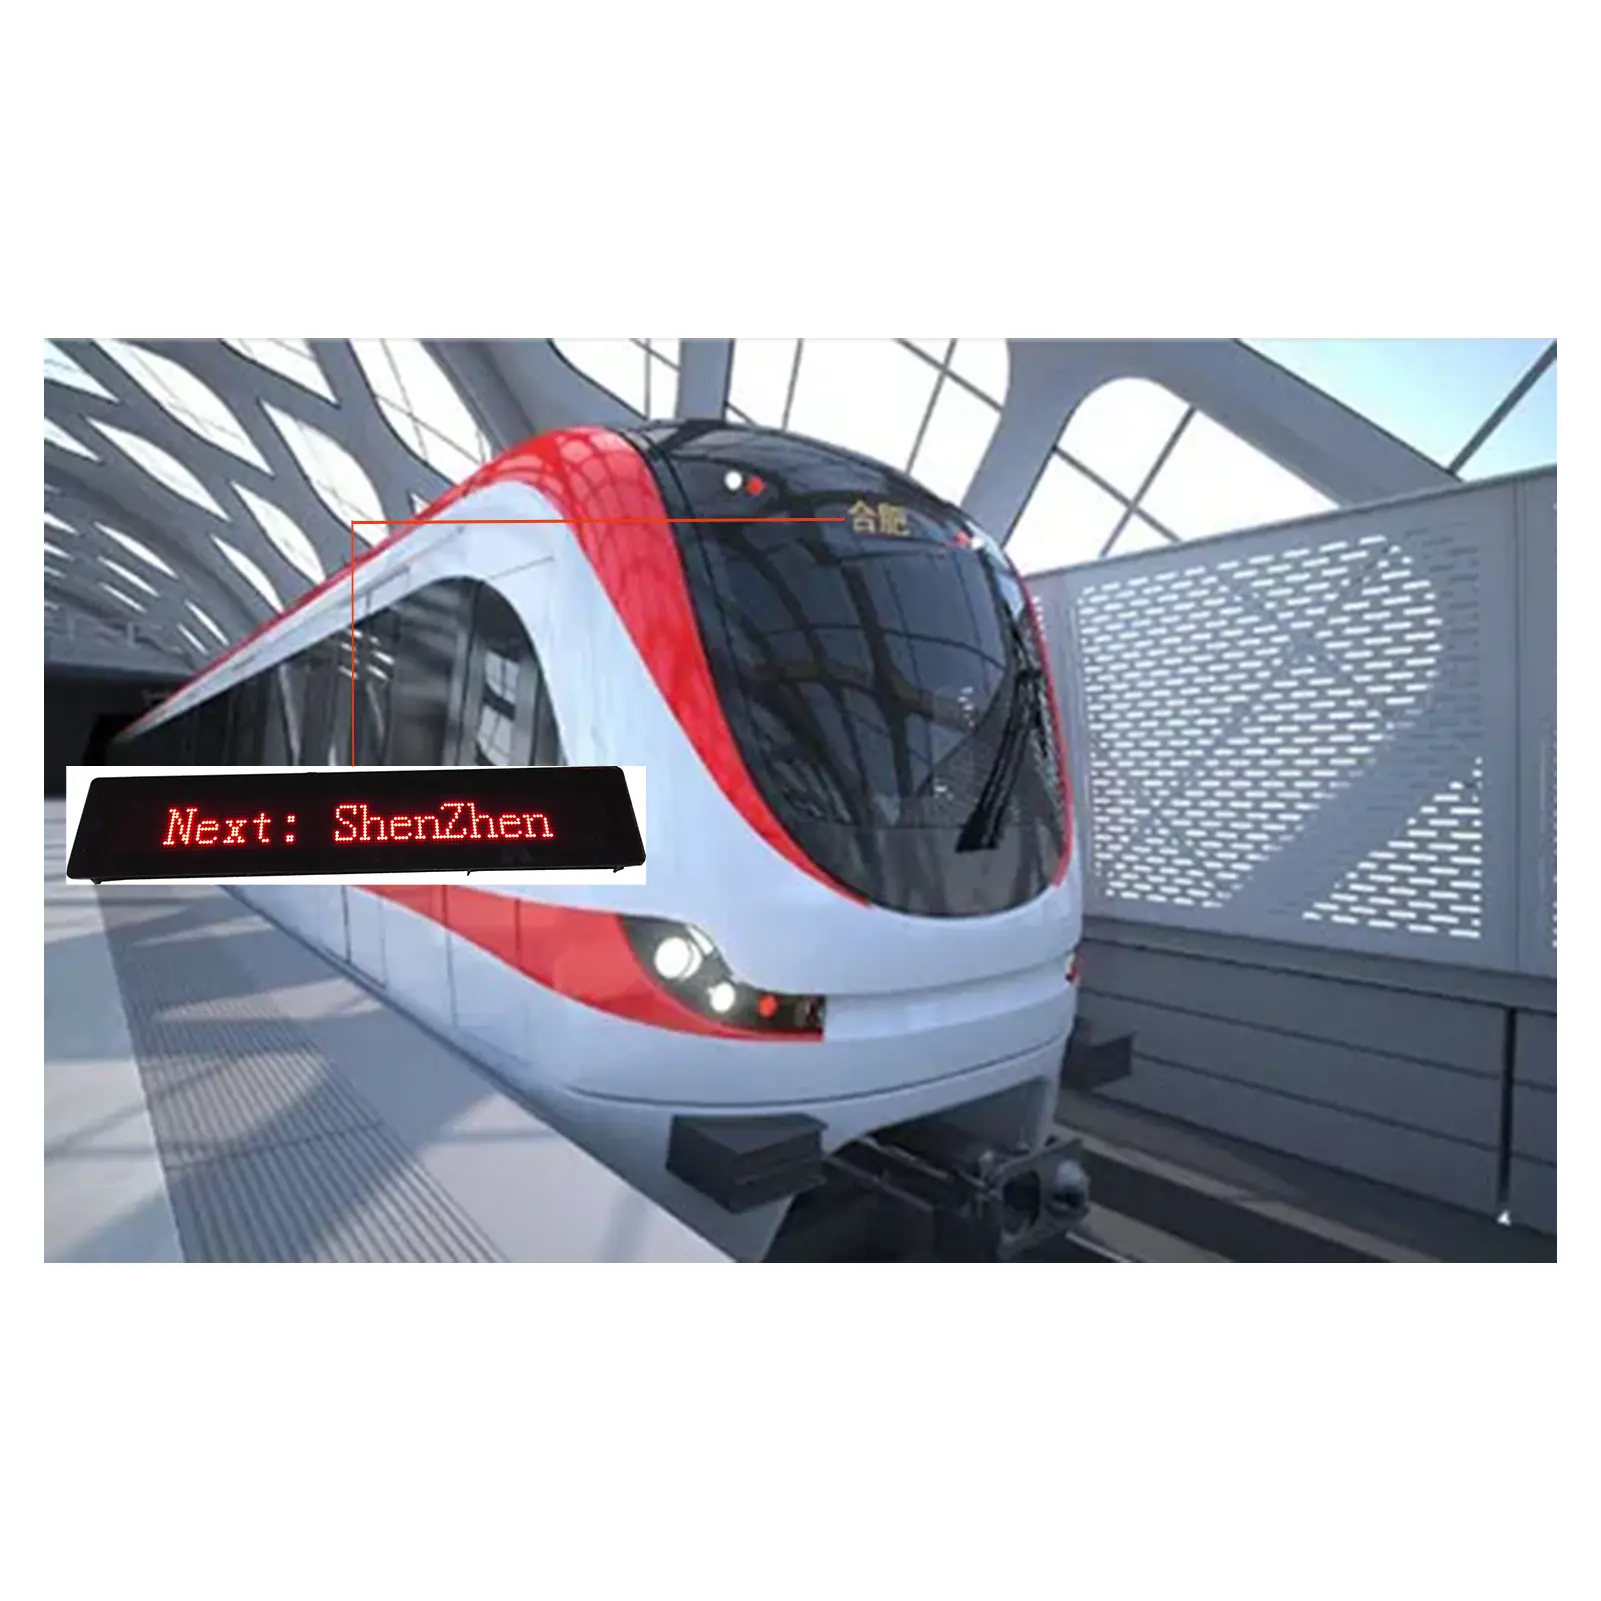 Bustrein Metro Led Bestemming Bord Display Elektronische Dashboard Passagier Informatie Scherm